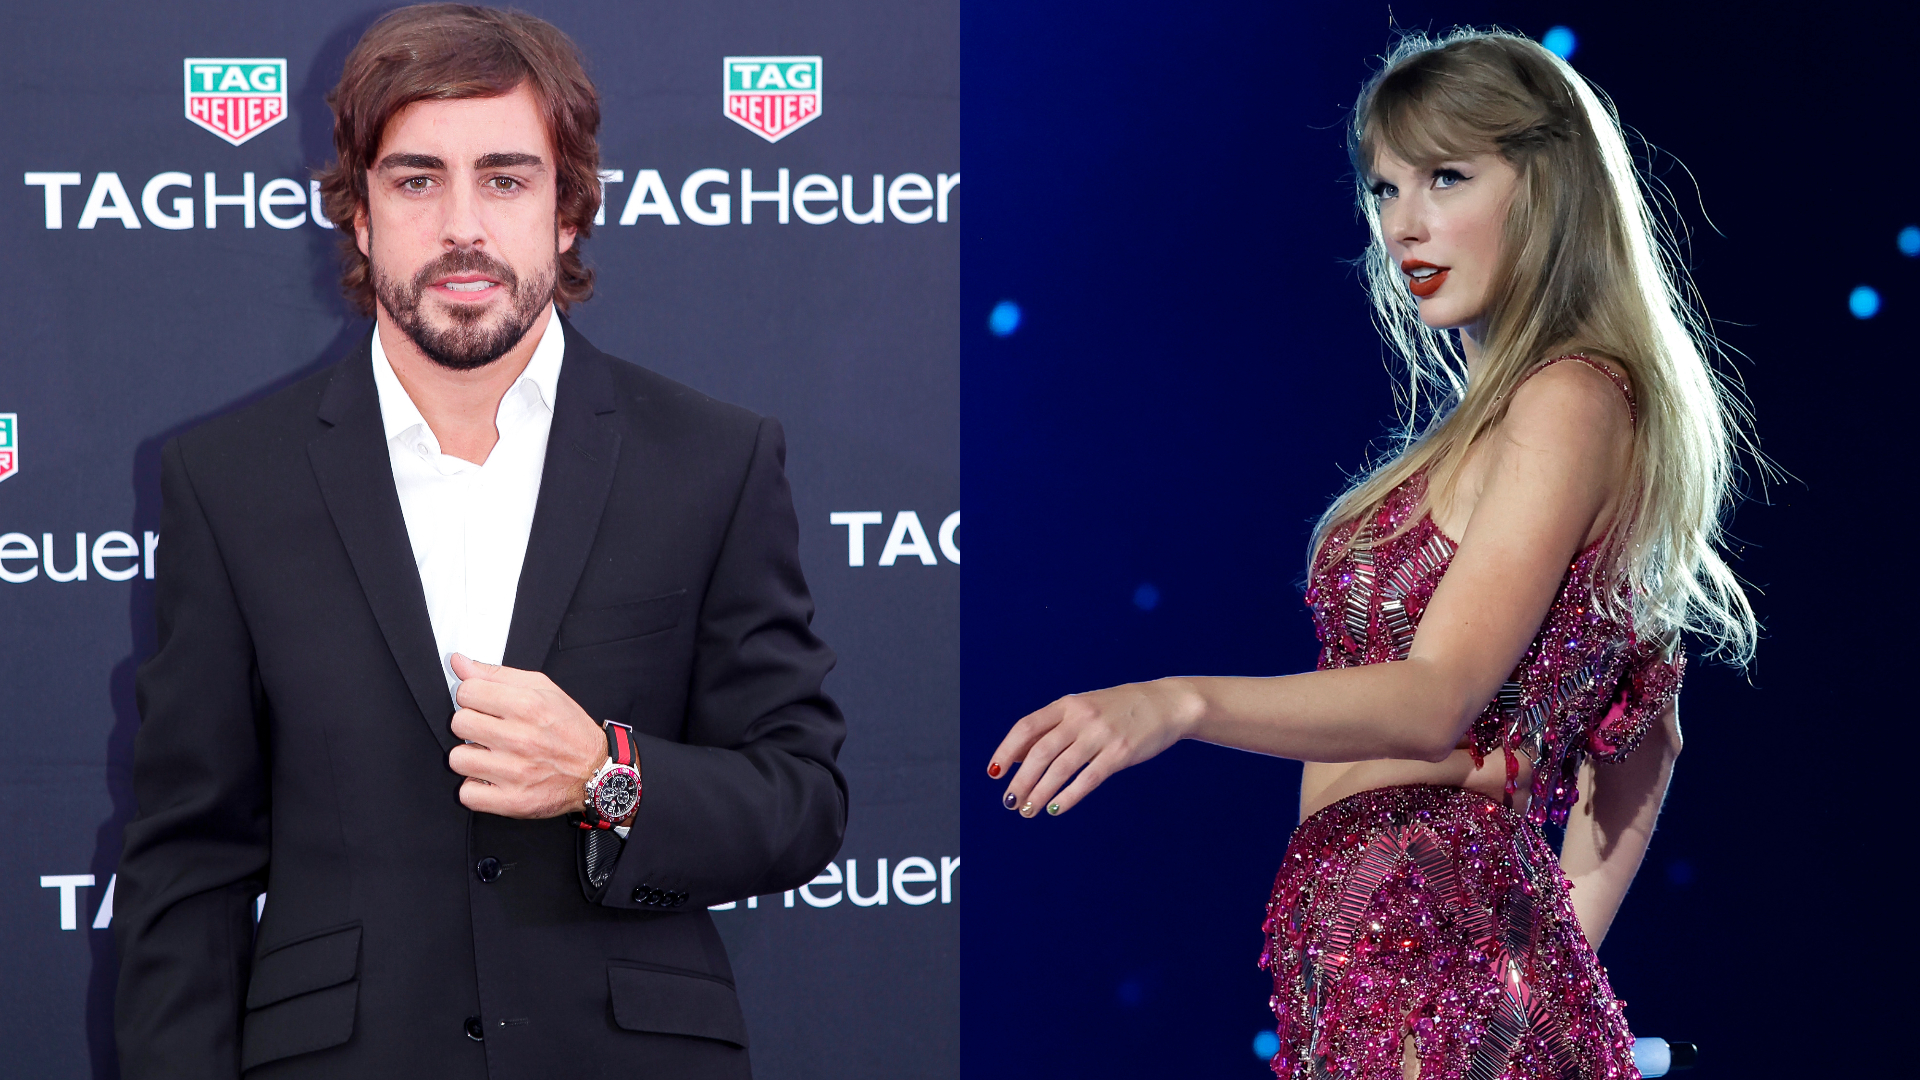 Piloto Fernando Alonso posta vídeo enigmático após rumores de affair com Taylor Swift; assista